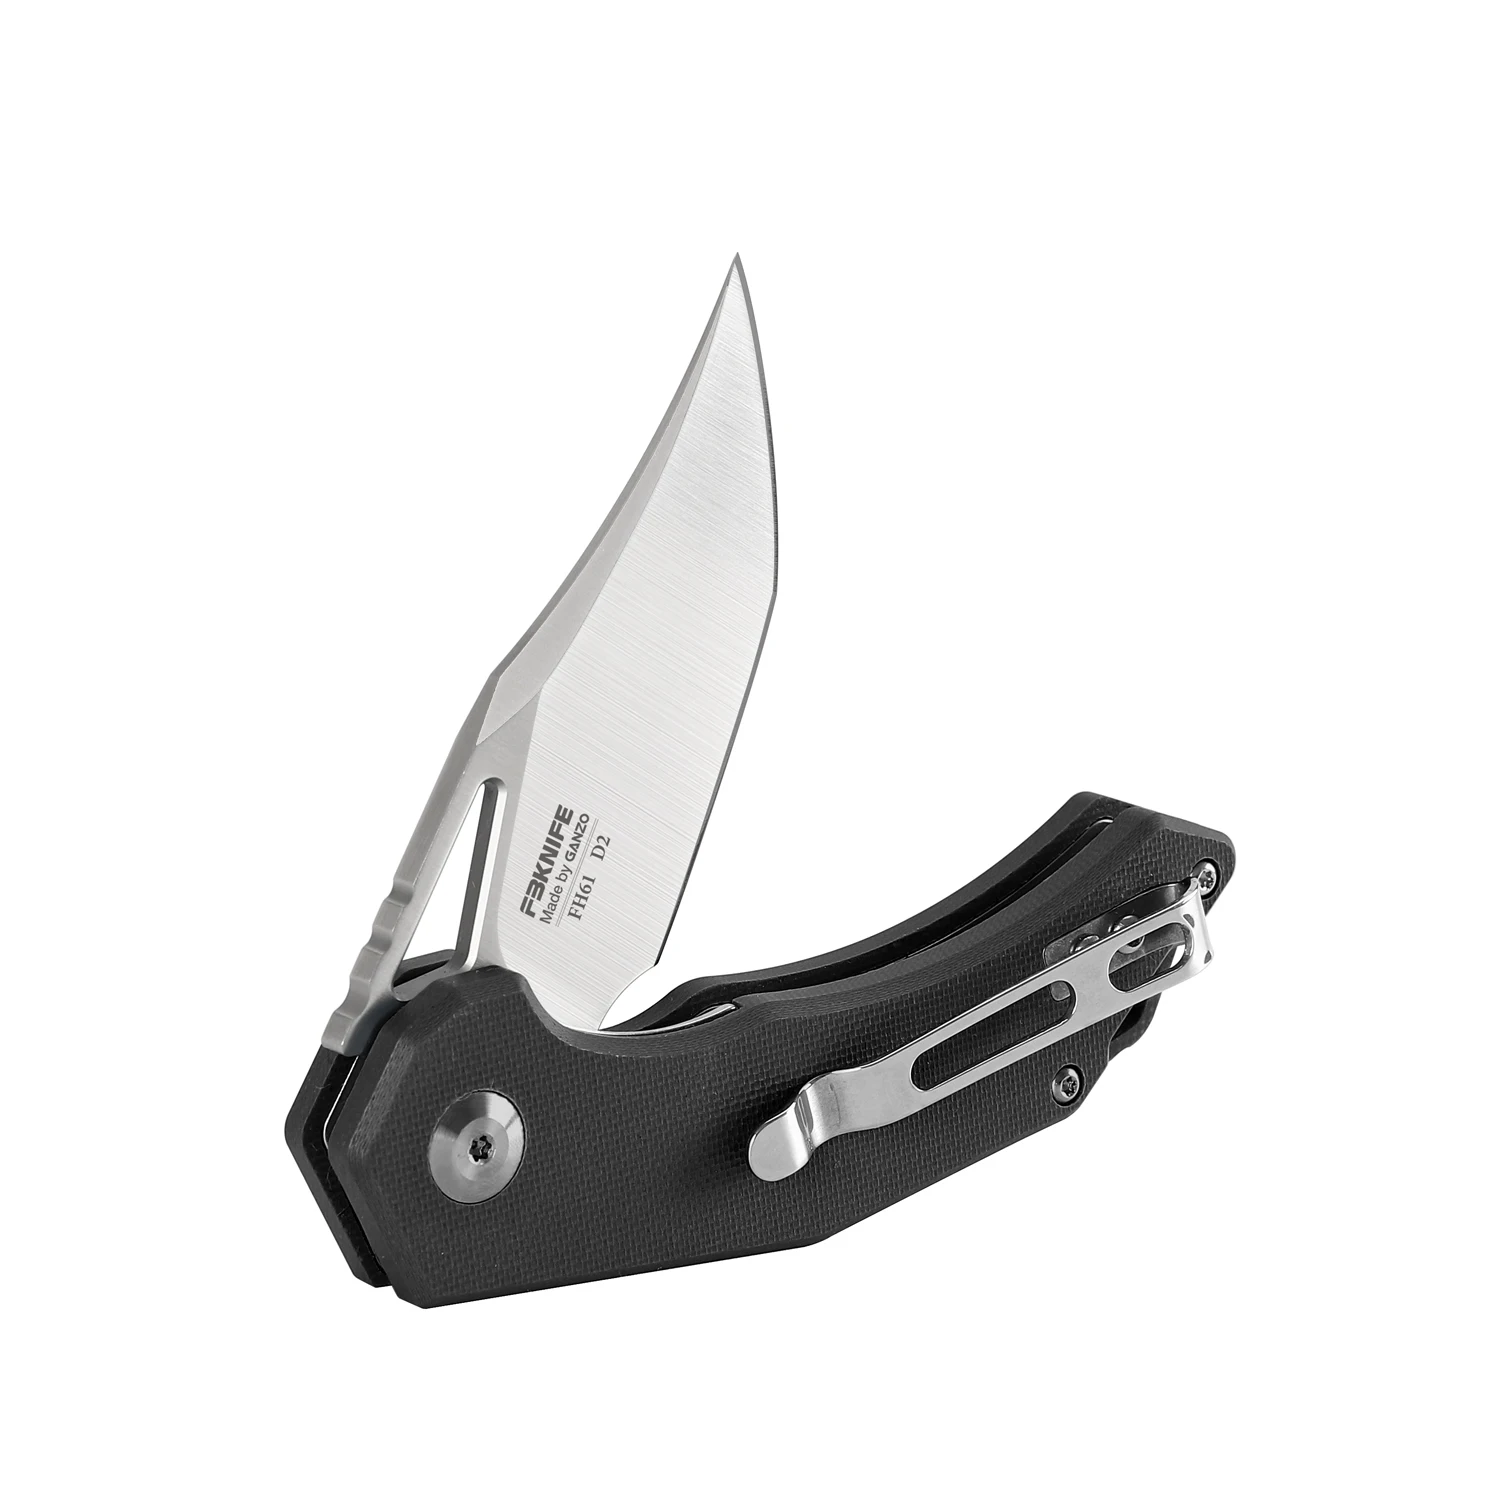 Firebird Ganzo FB нож FH61 60HRC D2 лезвие G10 ручка складной нож боевой и туристический нож Открытый EDC инструмент карманный складной нож